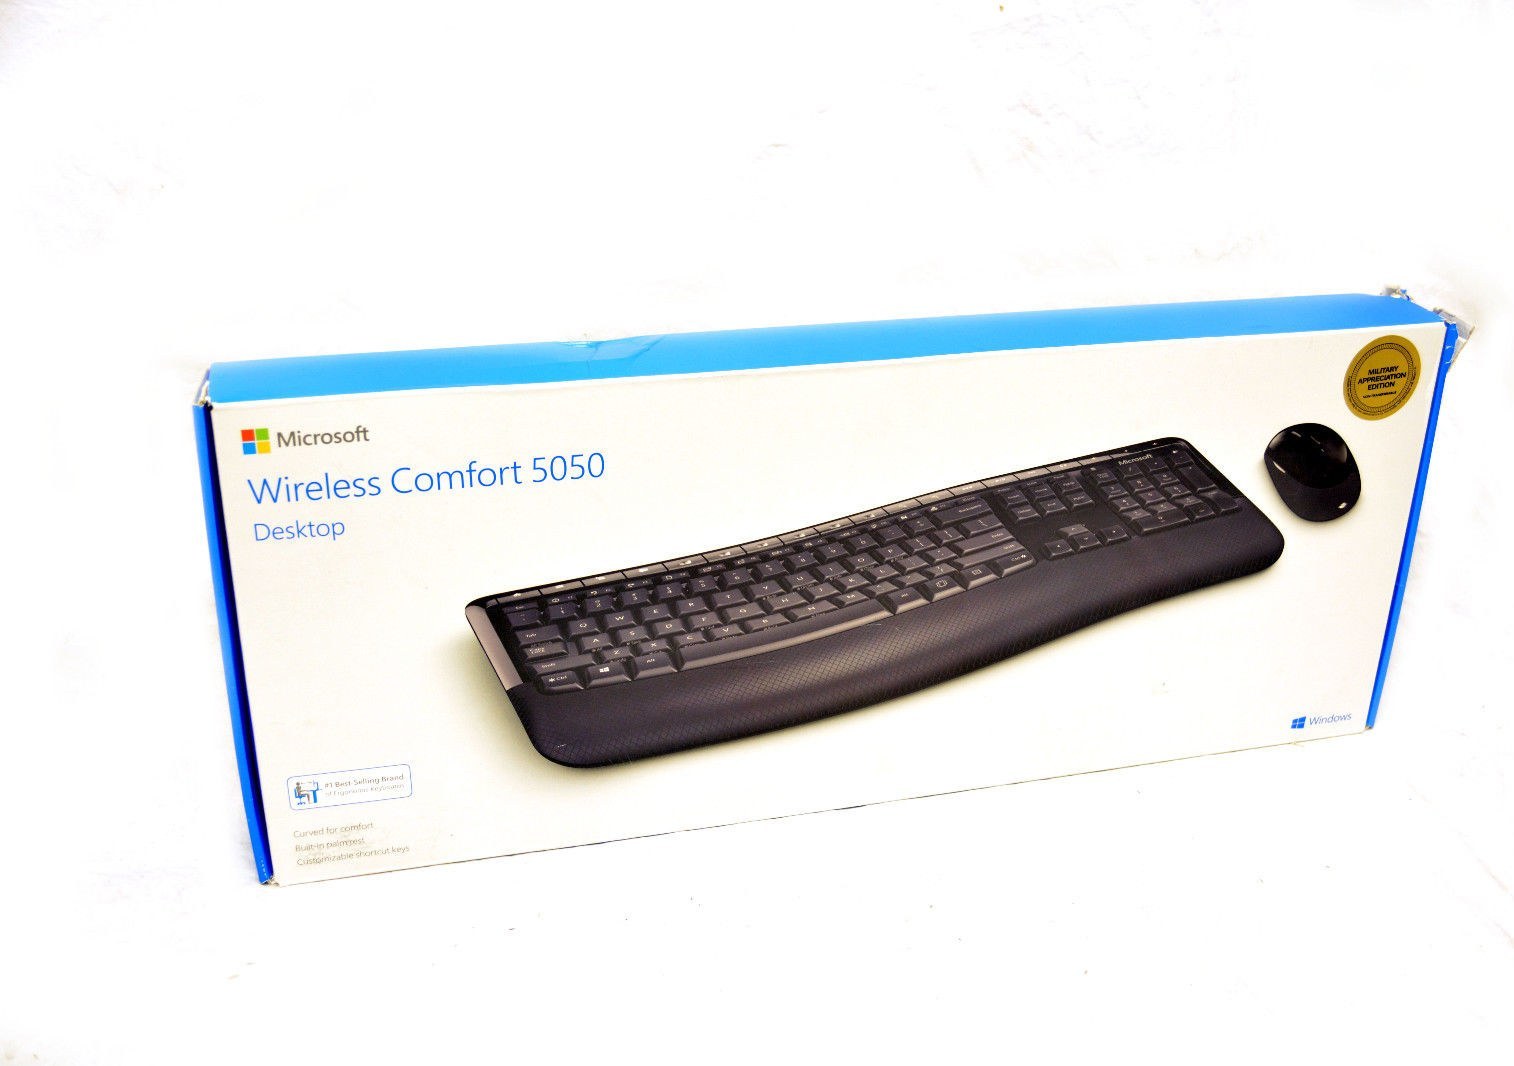 Teclado + Mouse Microsoft Comfort 5050 Wireless / Inglês - Preto  (PP4-00001) no Paraguai - Visão Vip Informática - Compras no Paraguai -  Loja de Informática